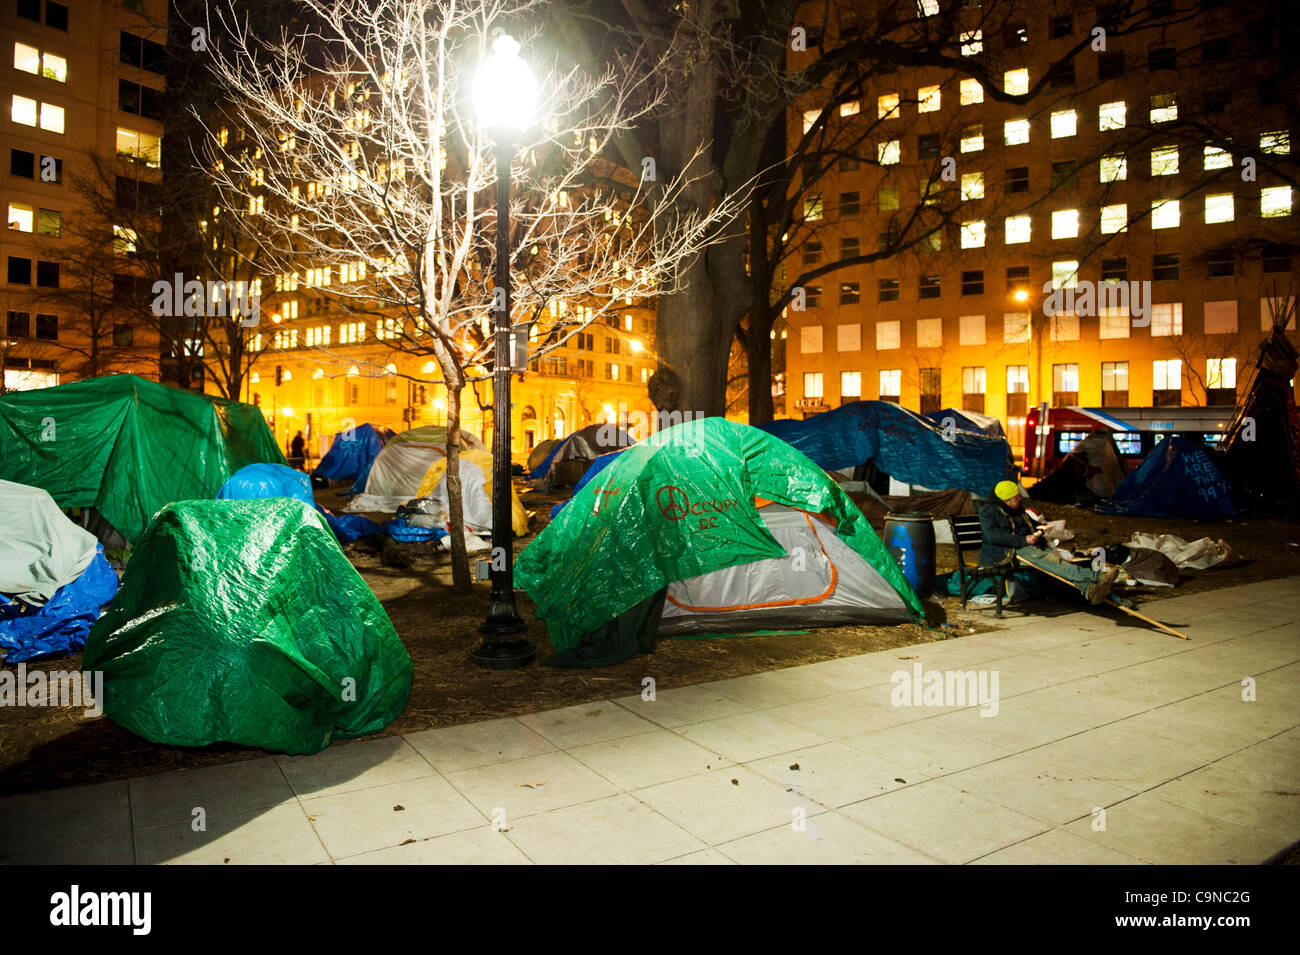 30-1-2012, McPherson Square, occupent Washington DC, il y a encore beaucoup de tentes et des manifestants sur la place McPherson la nuit la ville avait dit à l'occupant pas plus de dormir ou en camping dans le parc. Banque D'Images